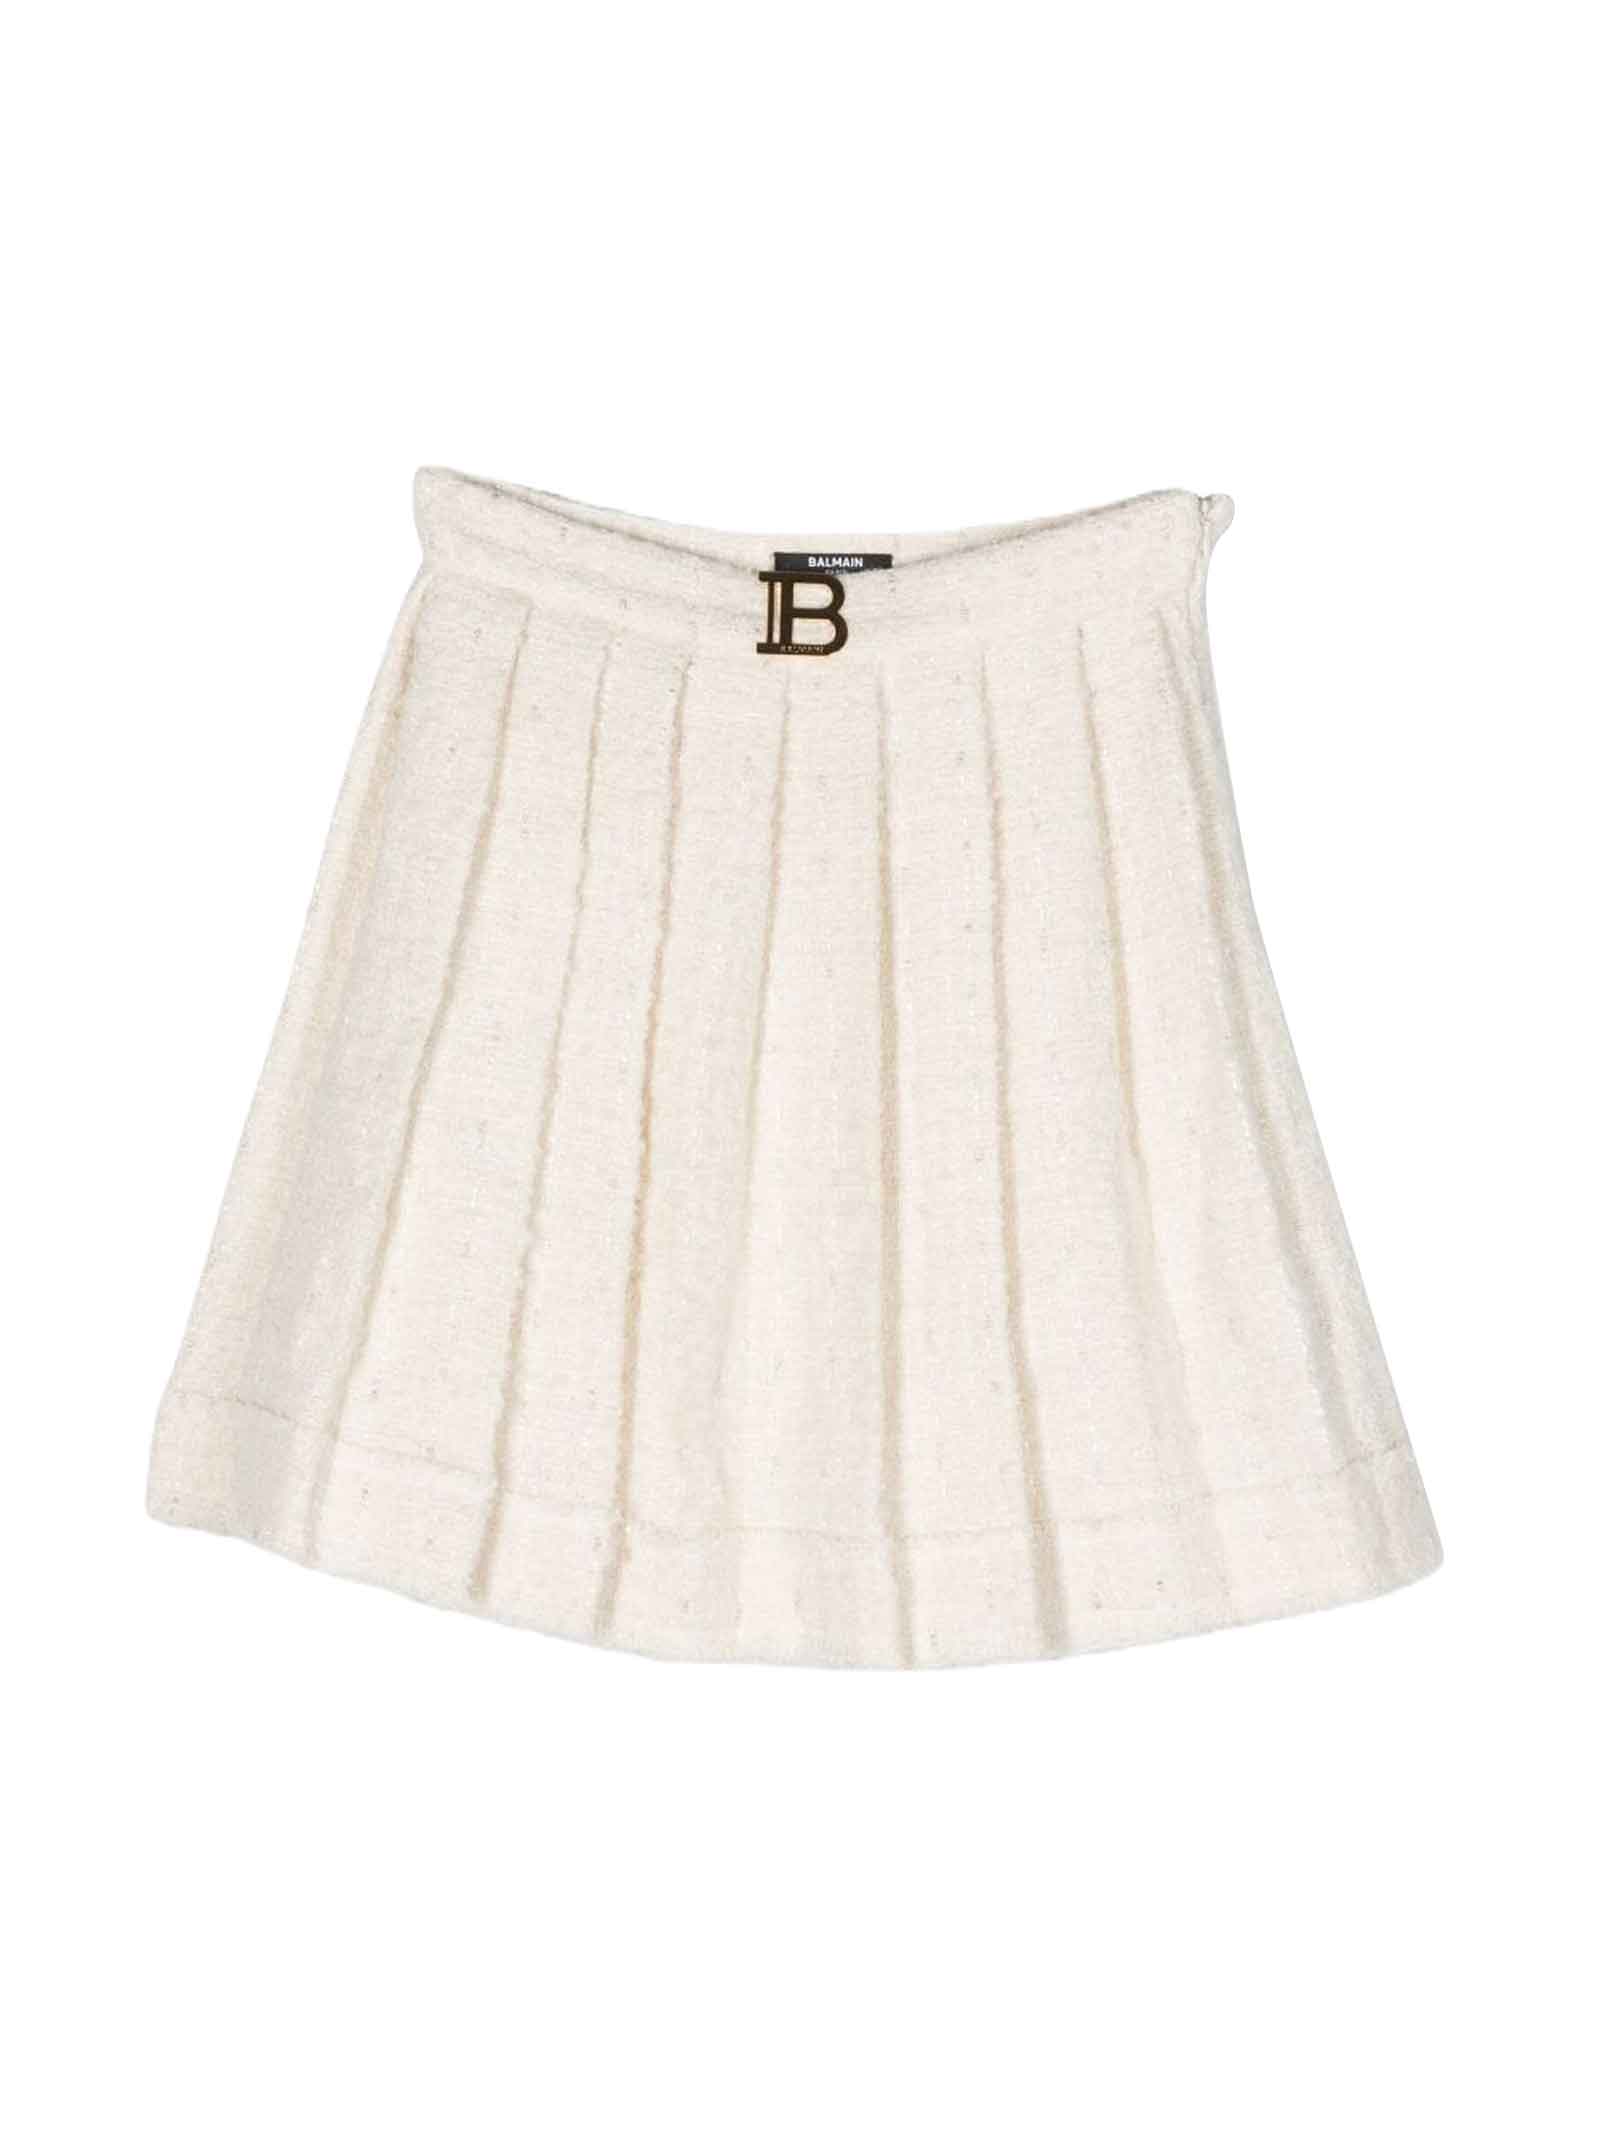 Balmain Kids' Ivory Skirt Girl In Bianco